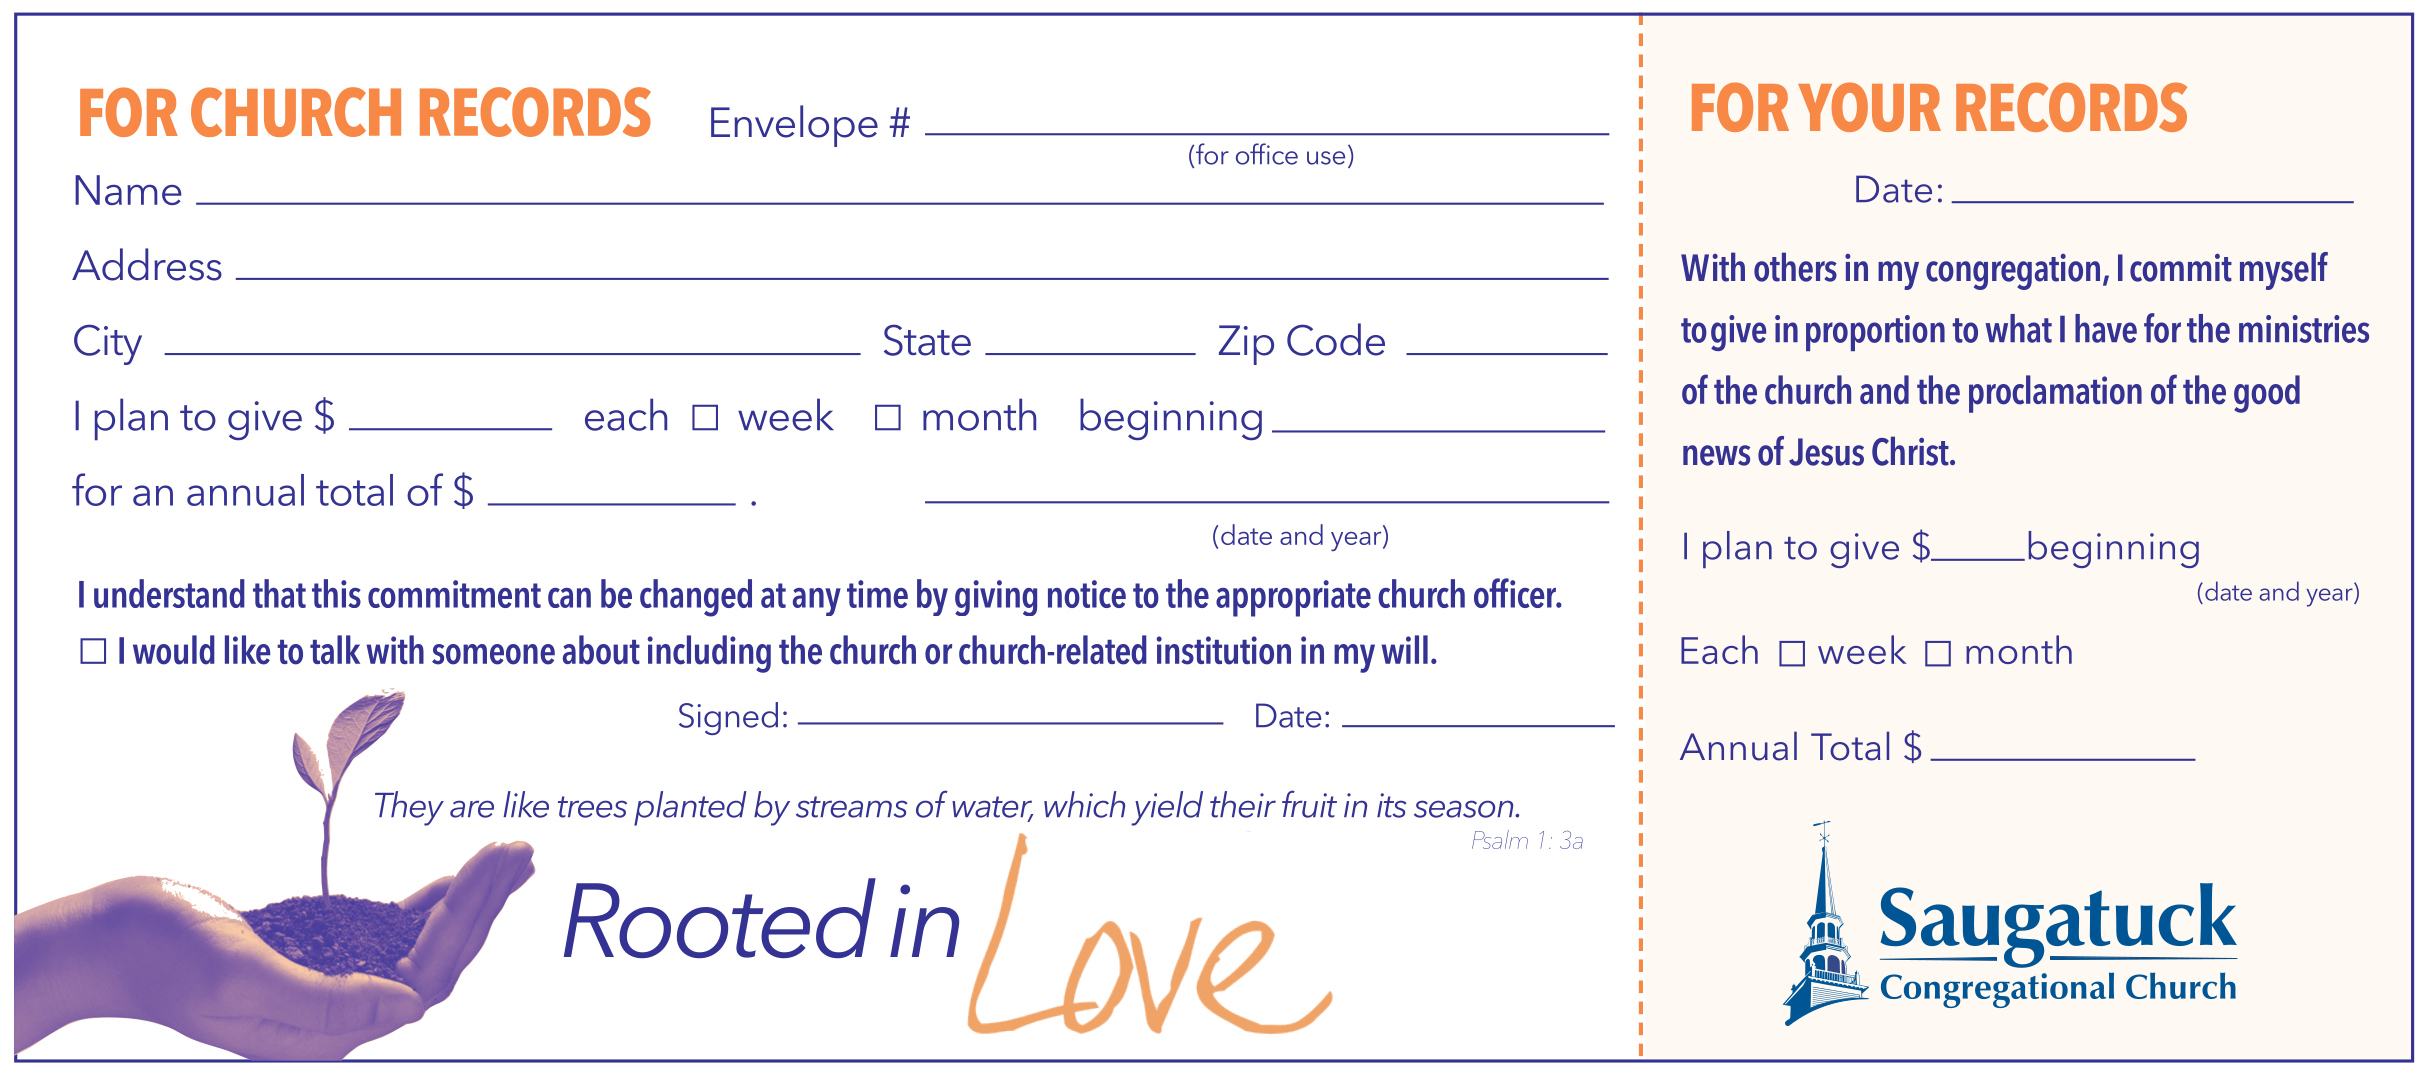 Ways to Give - Saugatuck Congregational Church, UCCSaugatuck Regarding Church Pledge Card Template